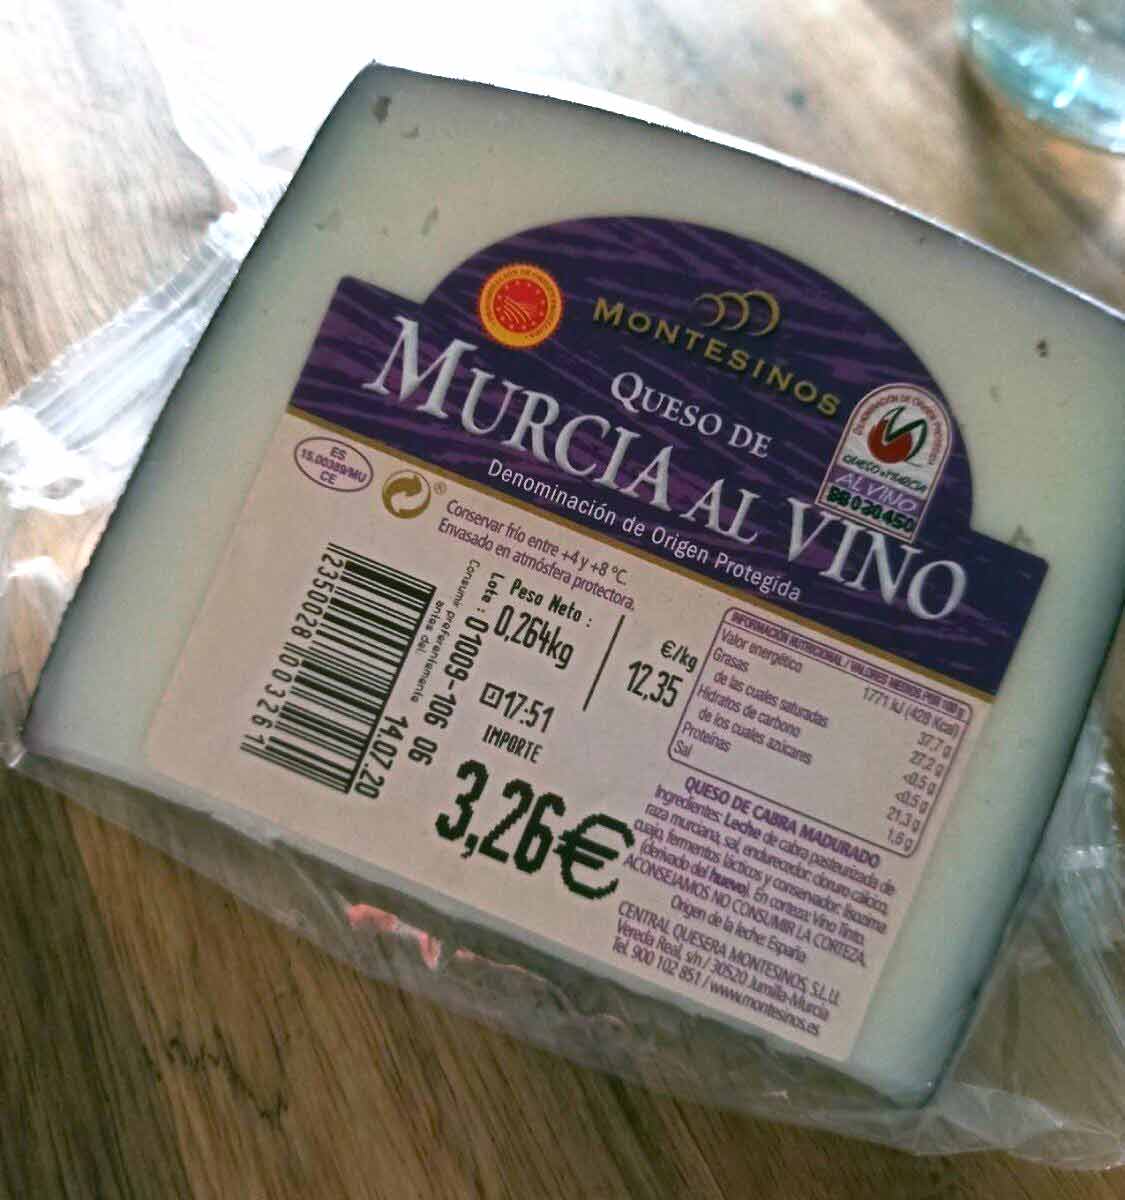 Murcia al Vino Cheese label